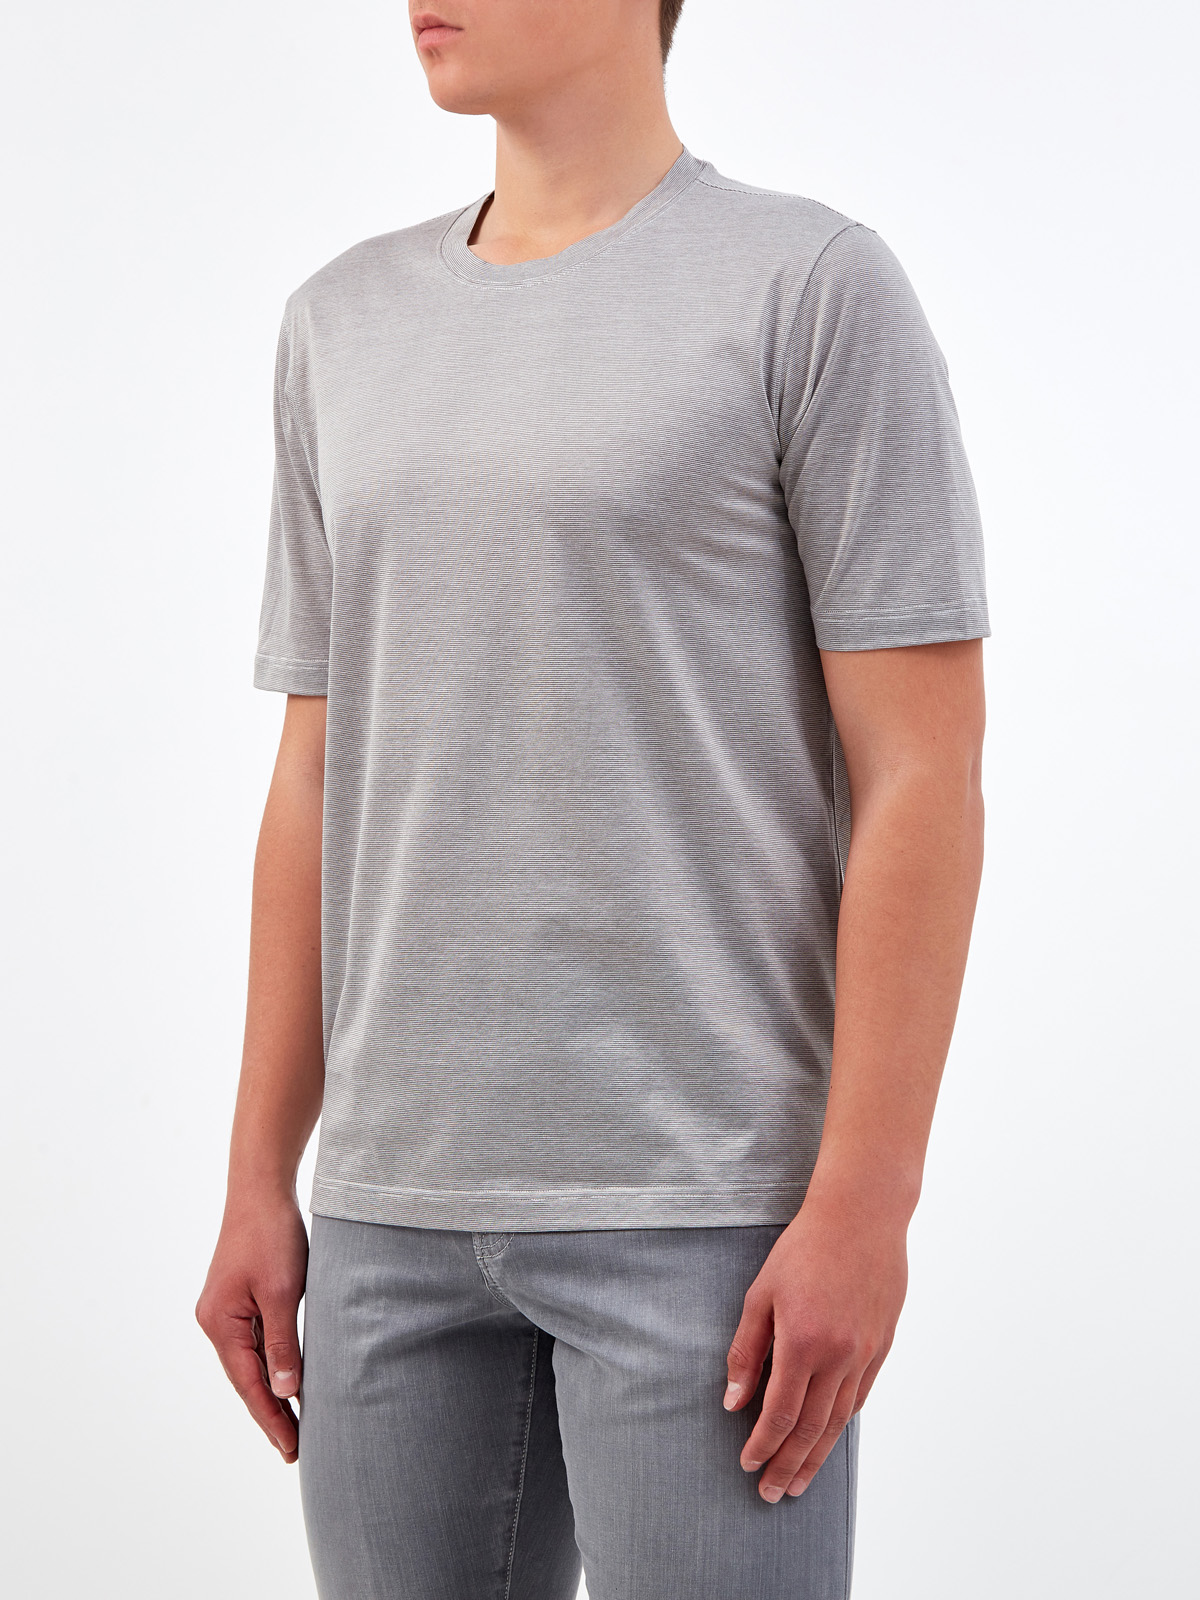 Хлопковая футболка с микро-принтом в тонкую полоску GRAN SASSO, цвет серый, размер 48;52;54;56;50 - фото 3